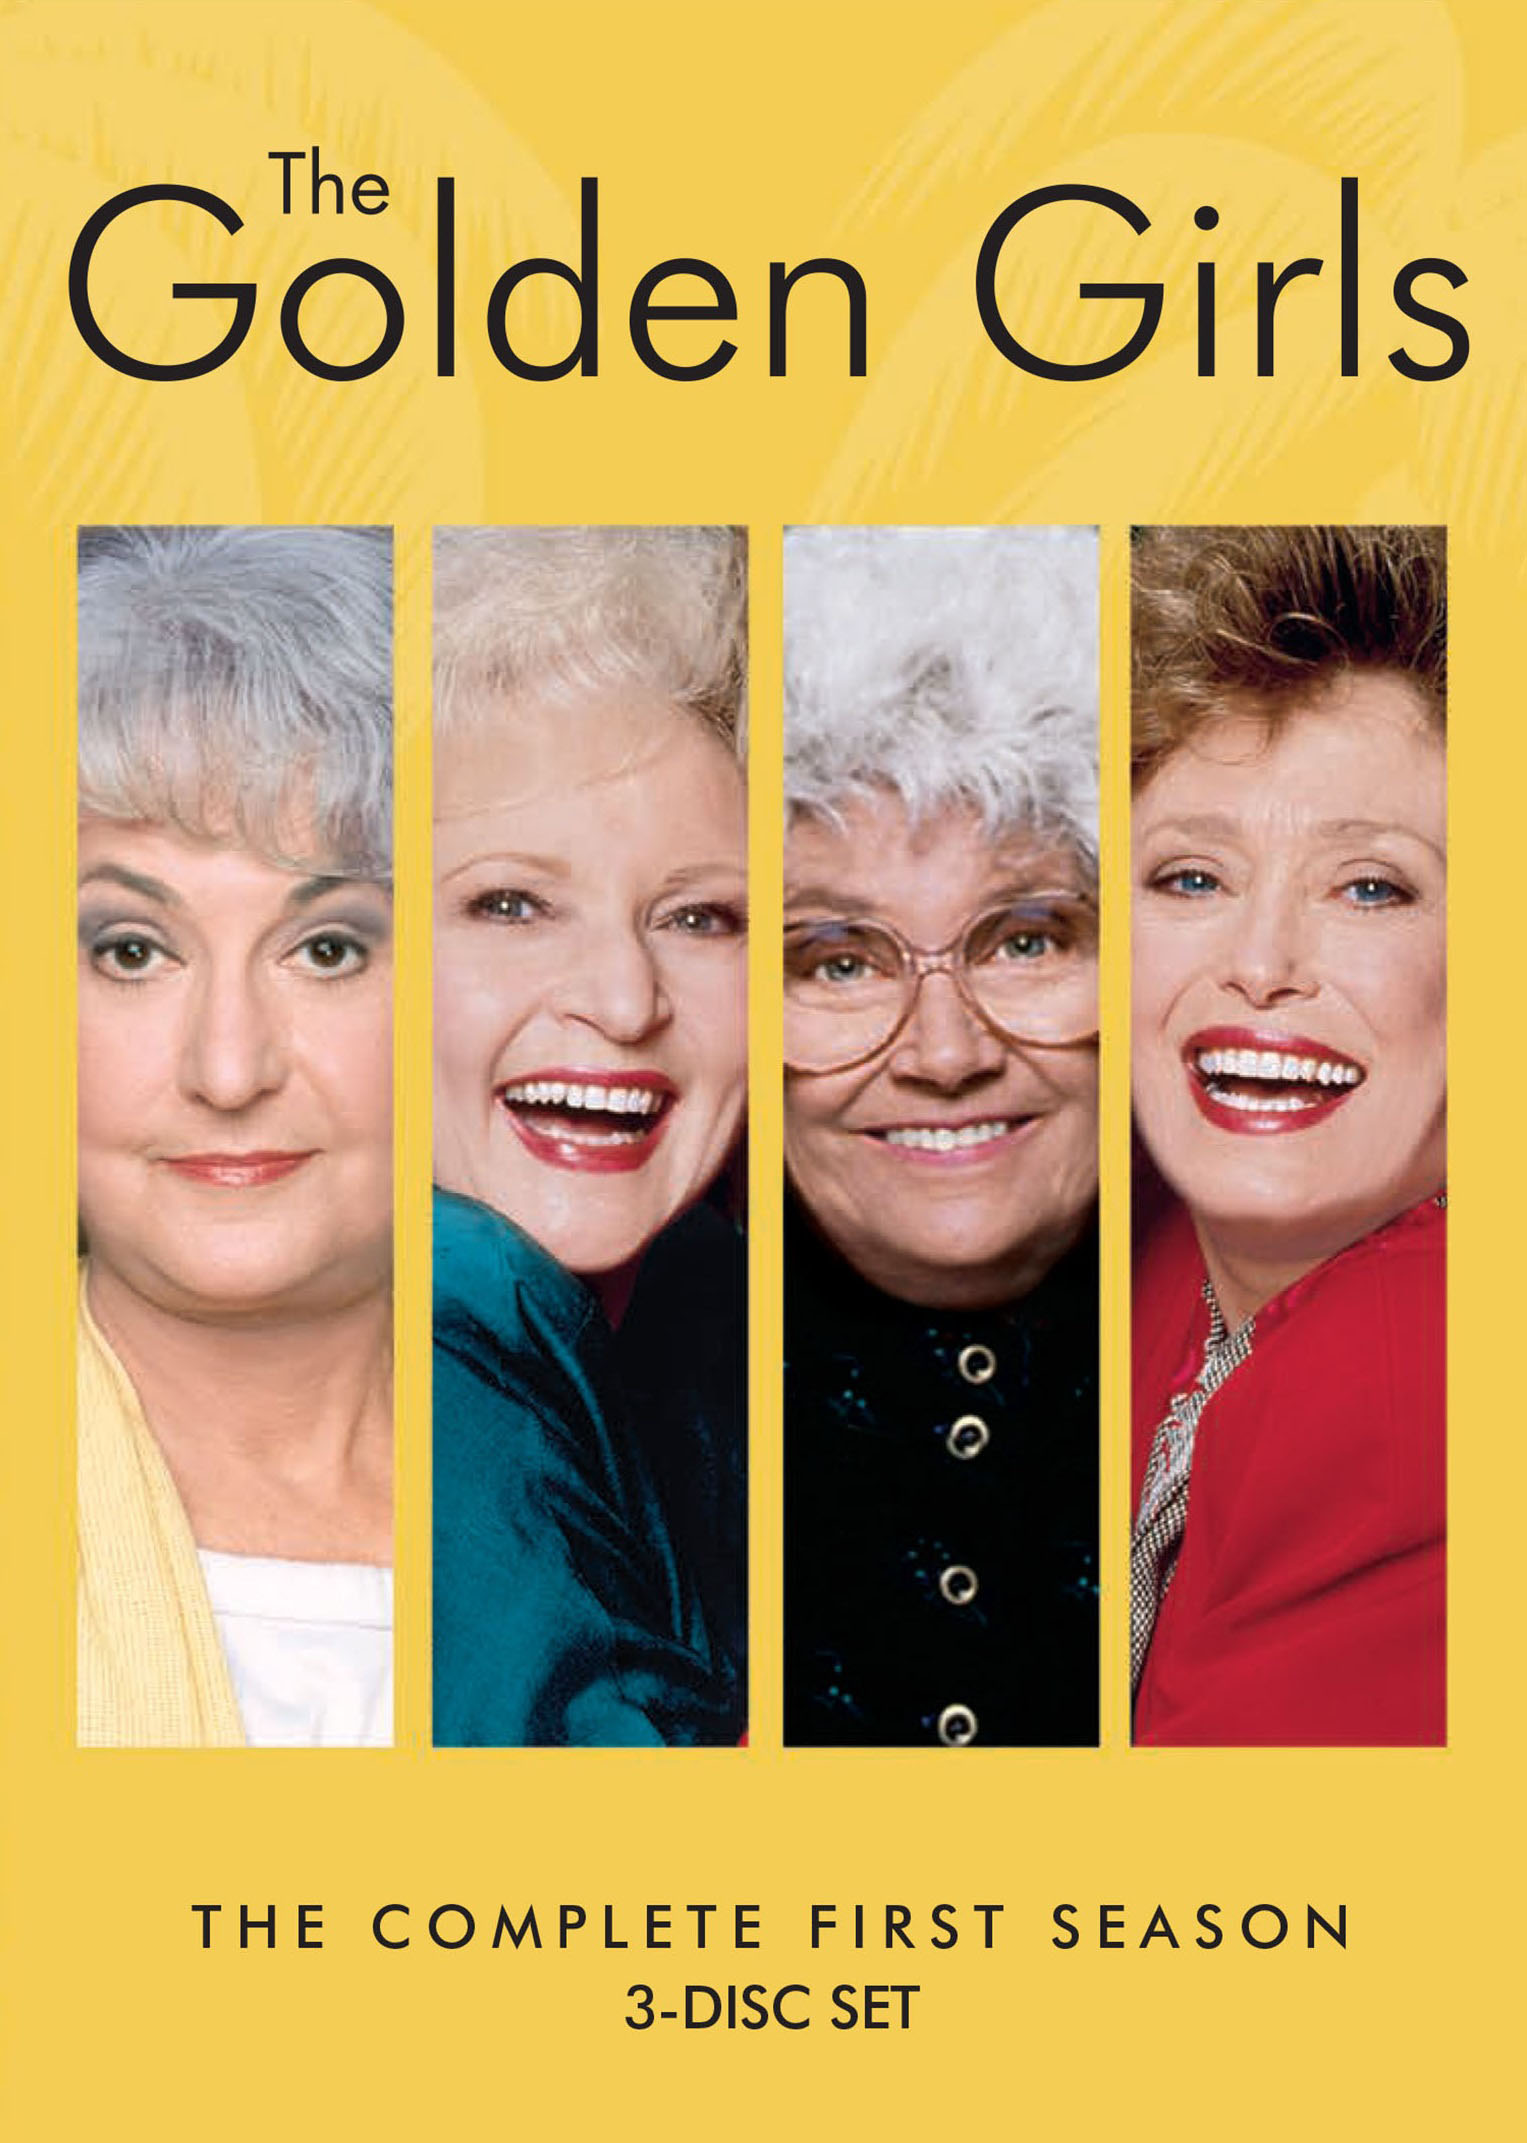 Going for Golden Eye [DVD] - Best Buy